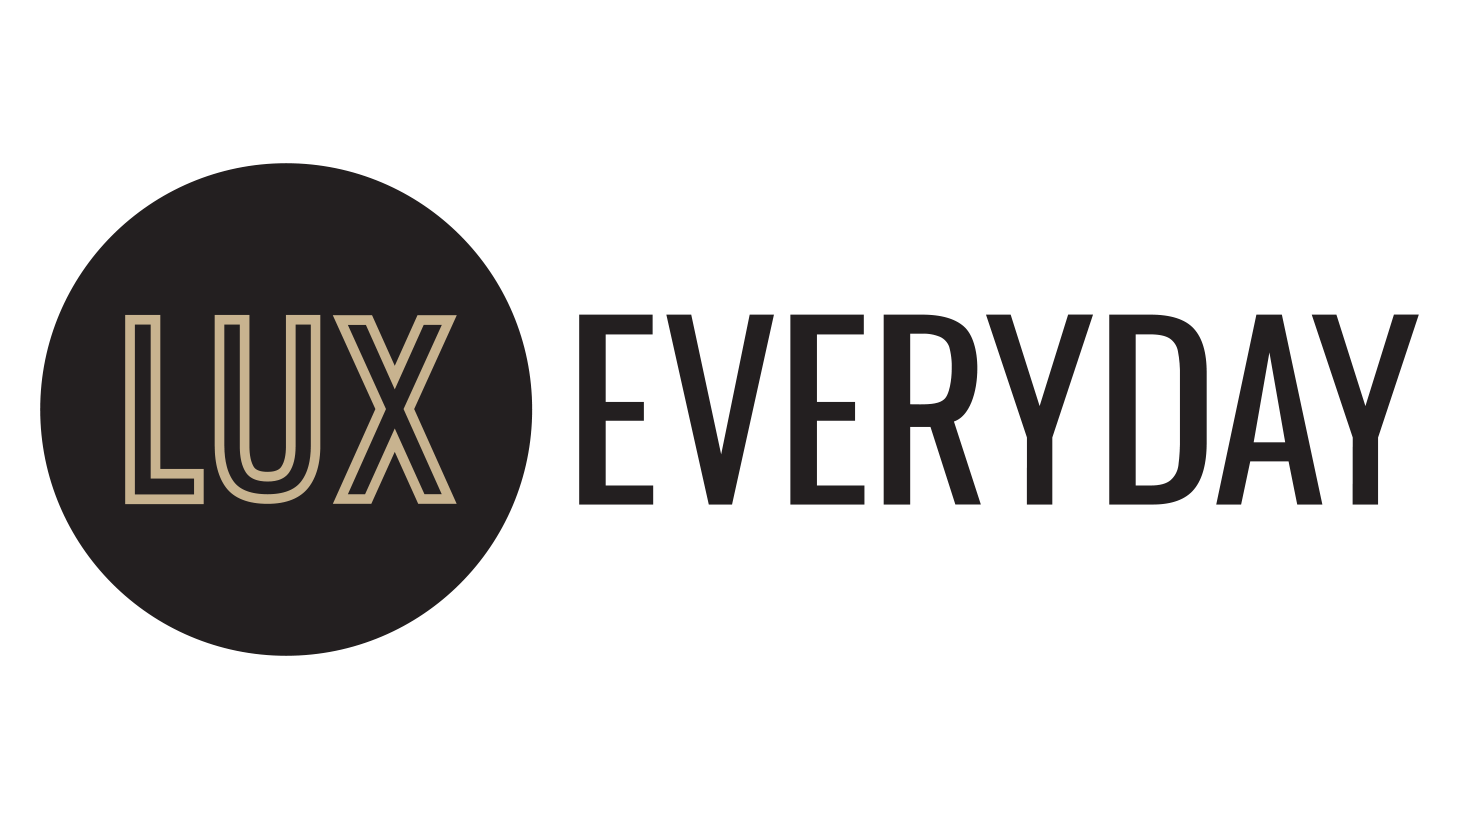 Everyday Logo - Lux Everyday